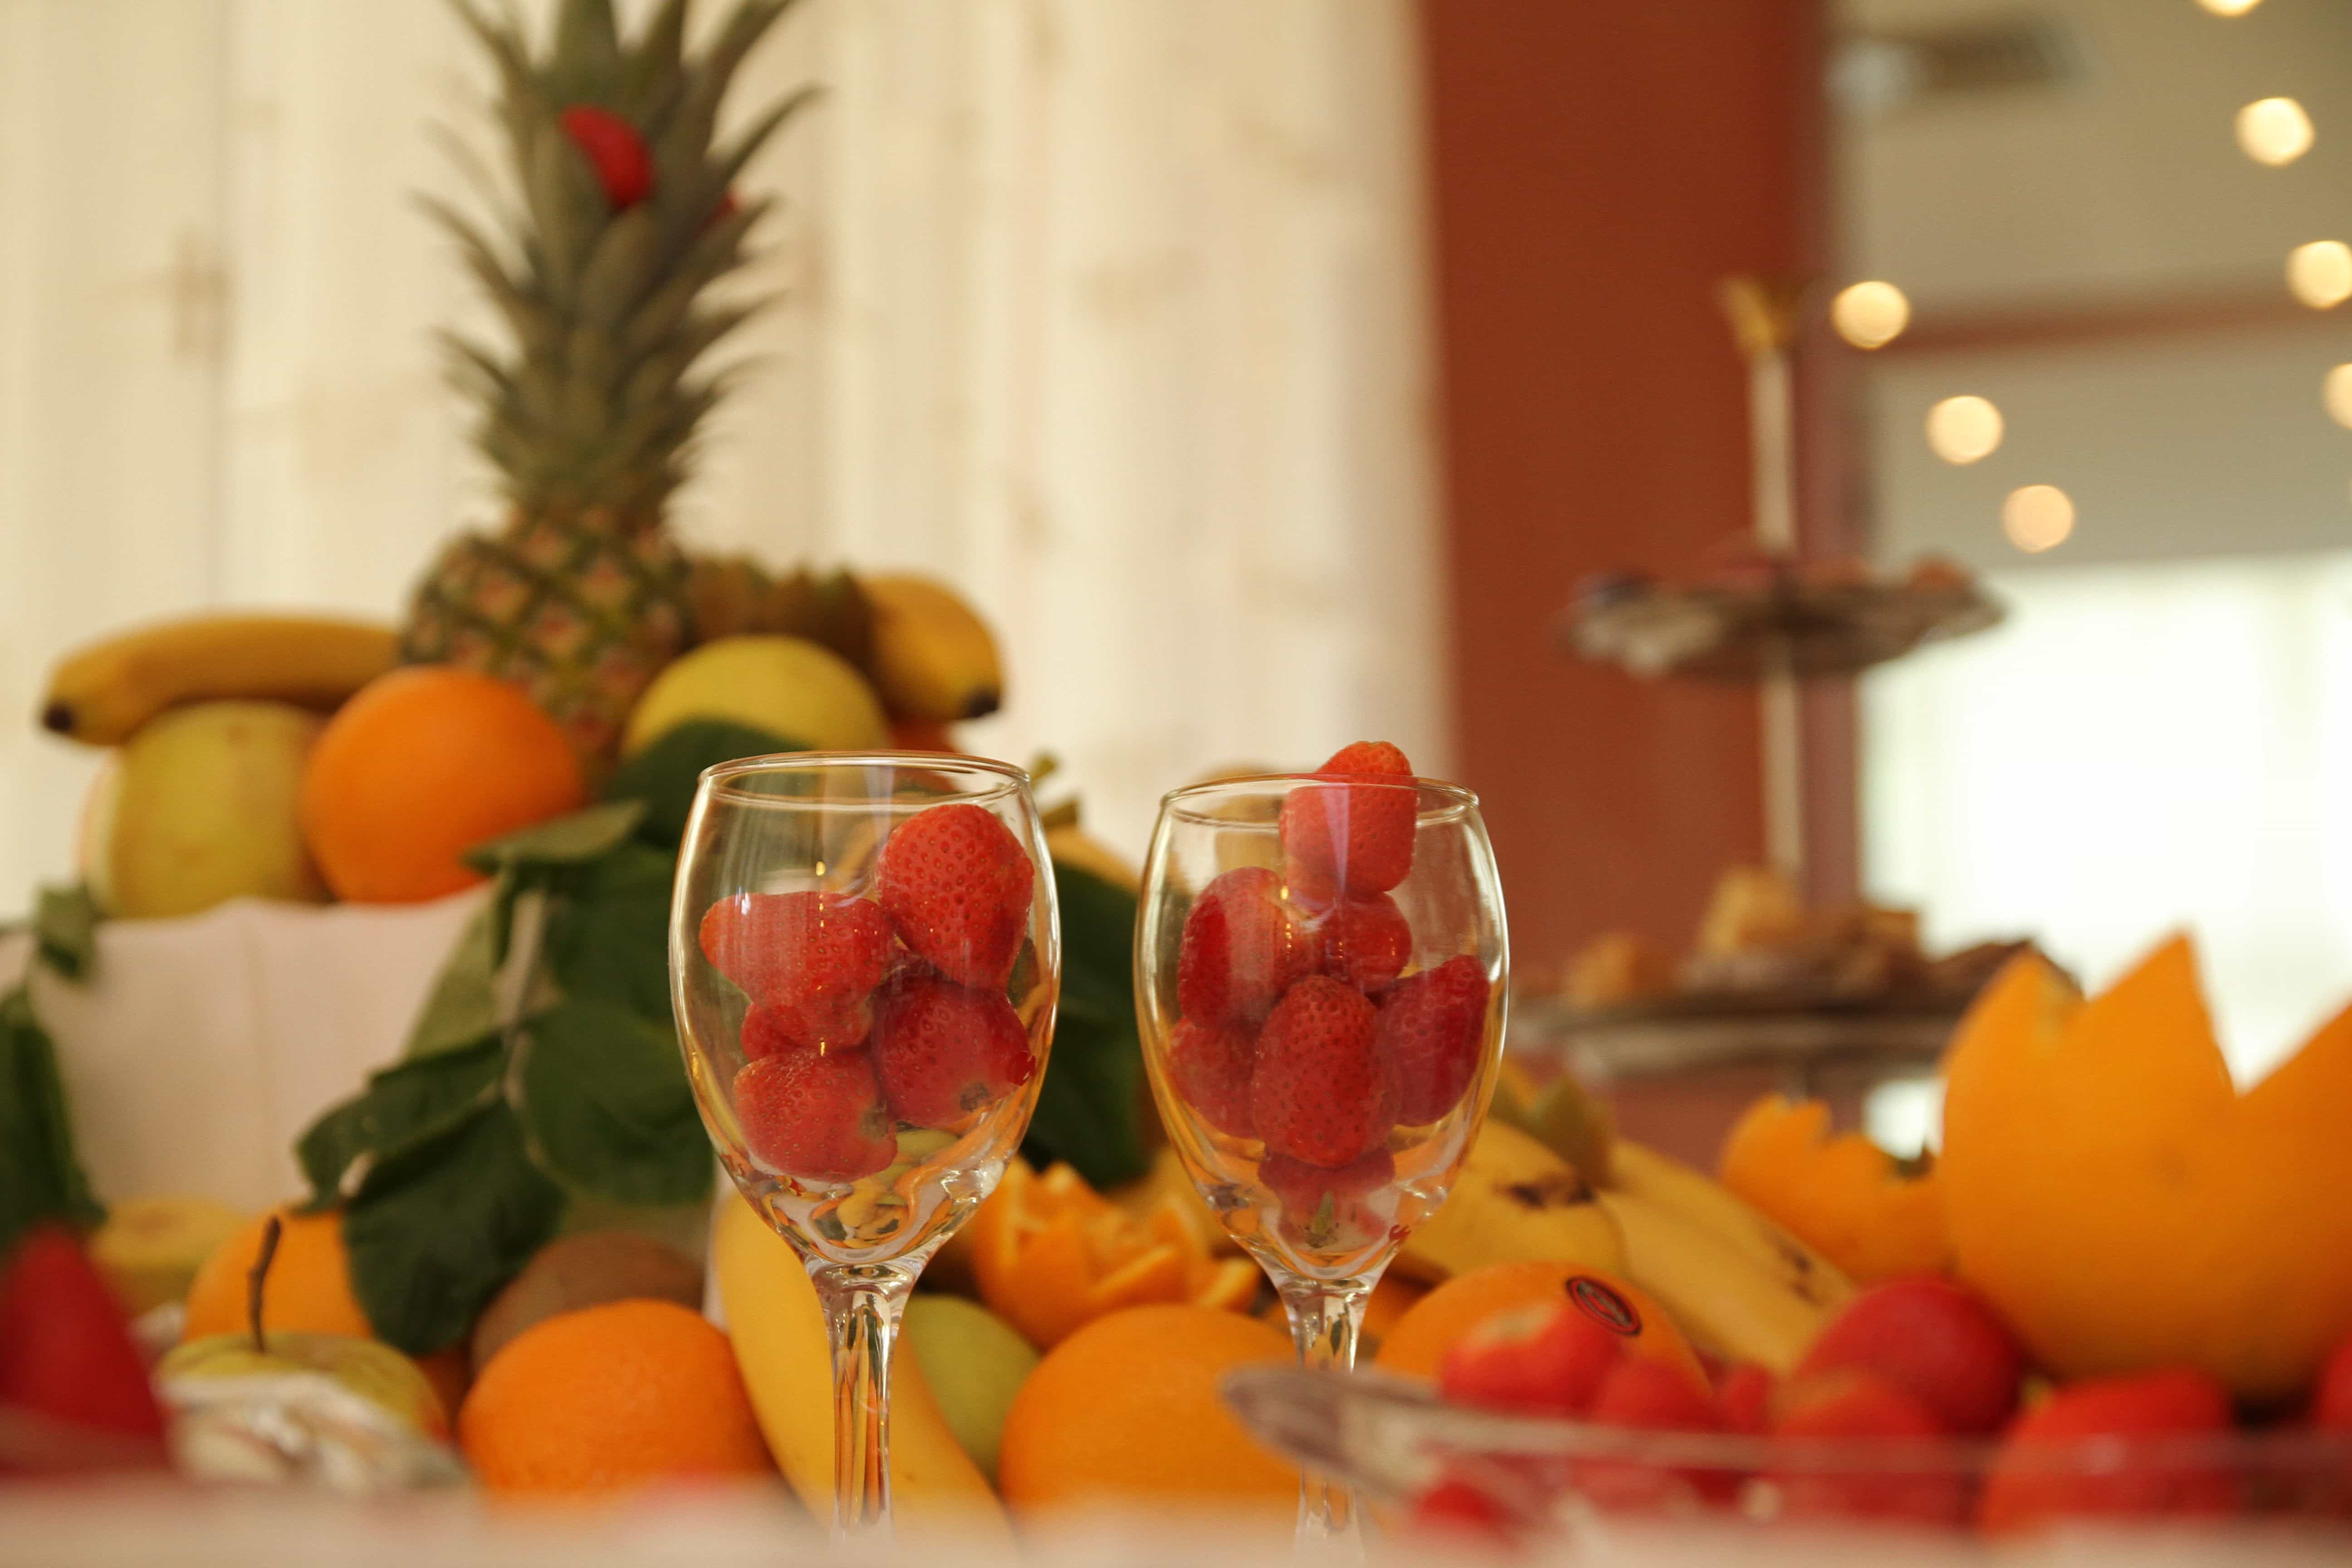 Duke bit rig Gratis billede: frugt, jordbær, tropisk, glas, part, fest, briller, mad,  Restaurant, pynt